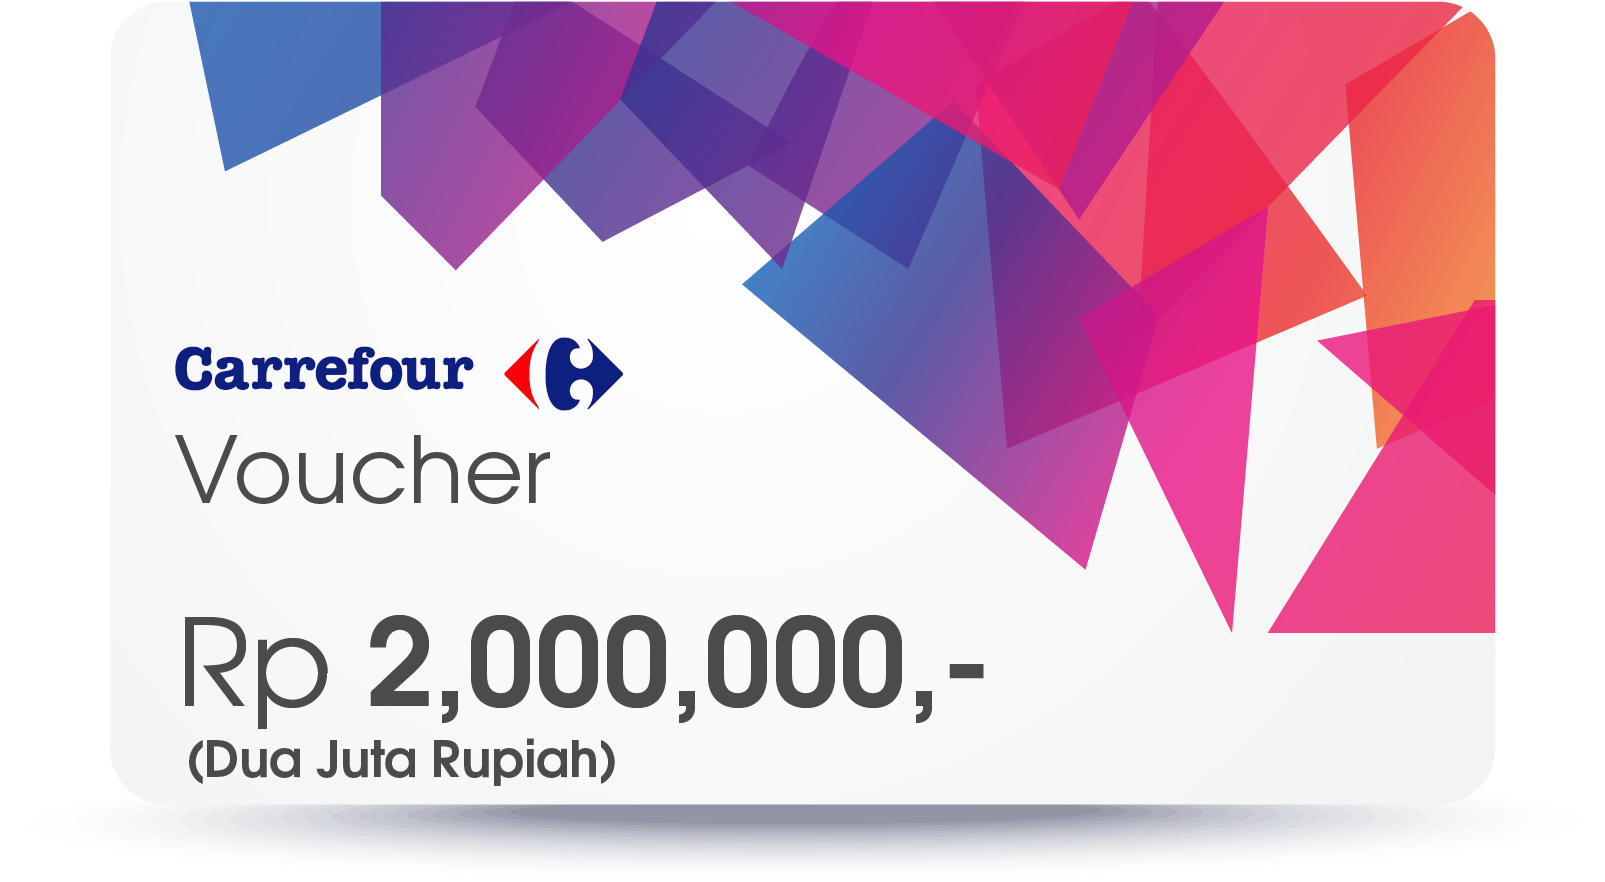 Voucher Carrefour Png - Voucher Carrefour 2 Juta Clipart (1761x935), Png Download